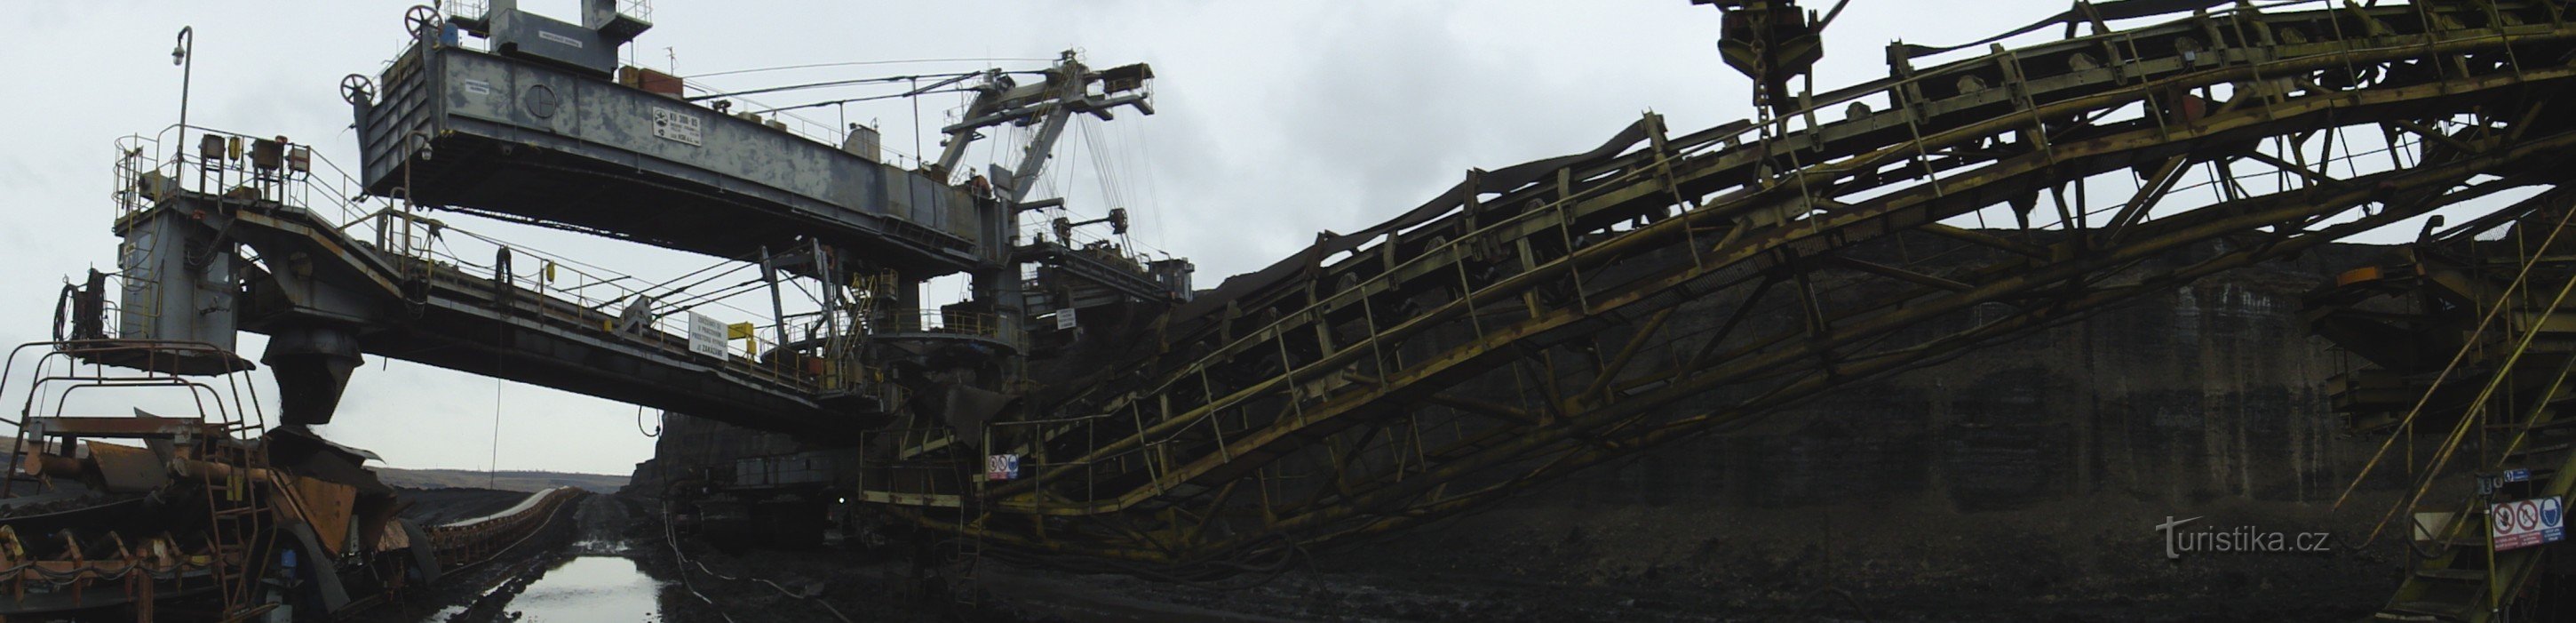 Ορυχείο ČSA - Εκσκαφέας άνθρακα KU 300